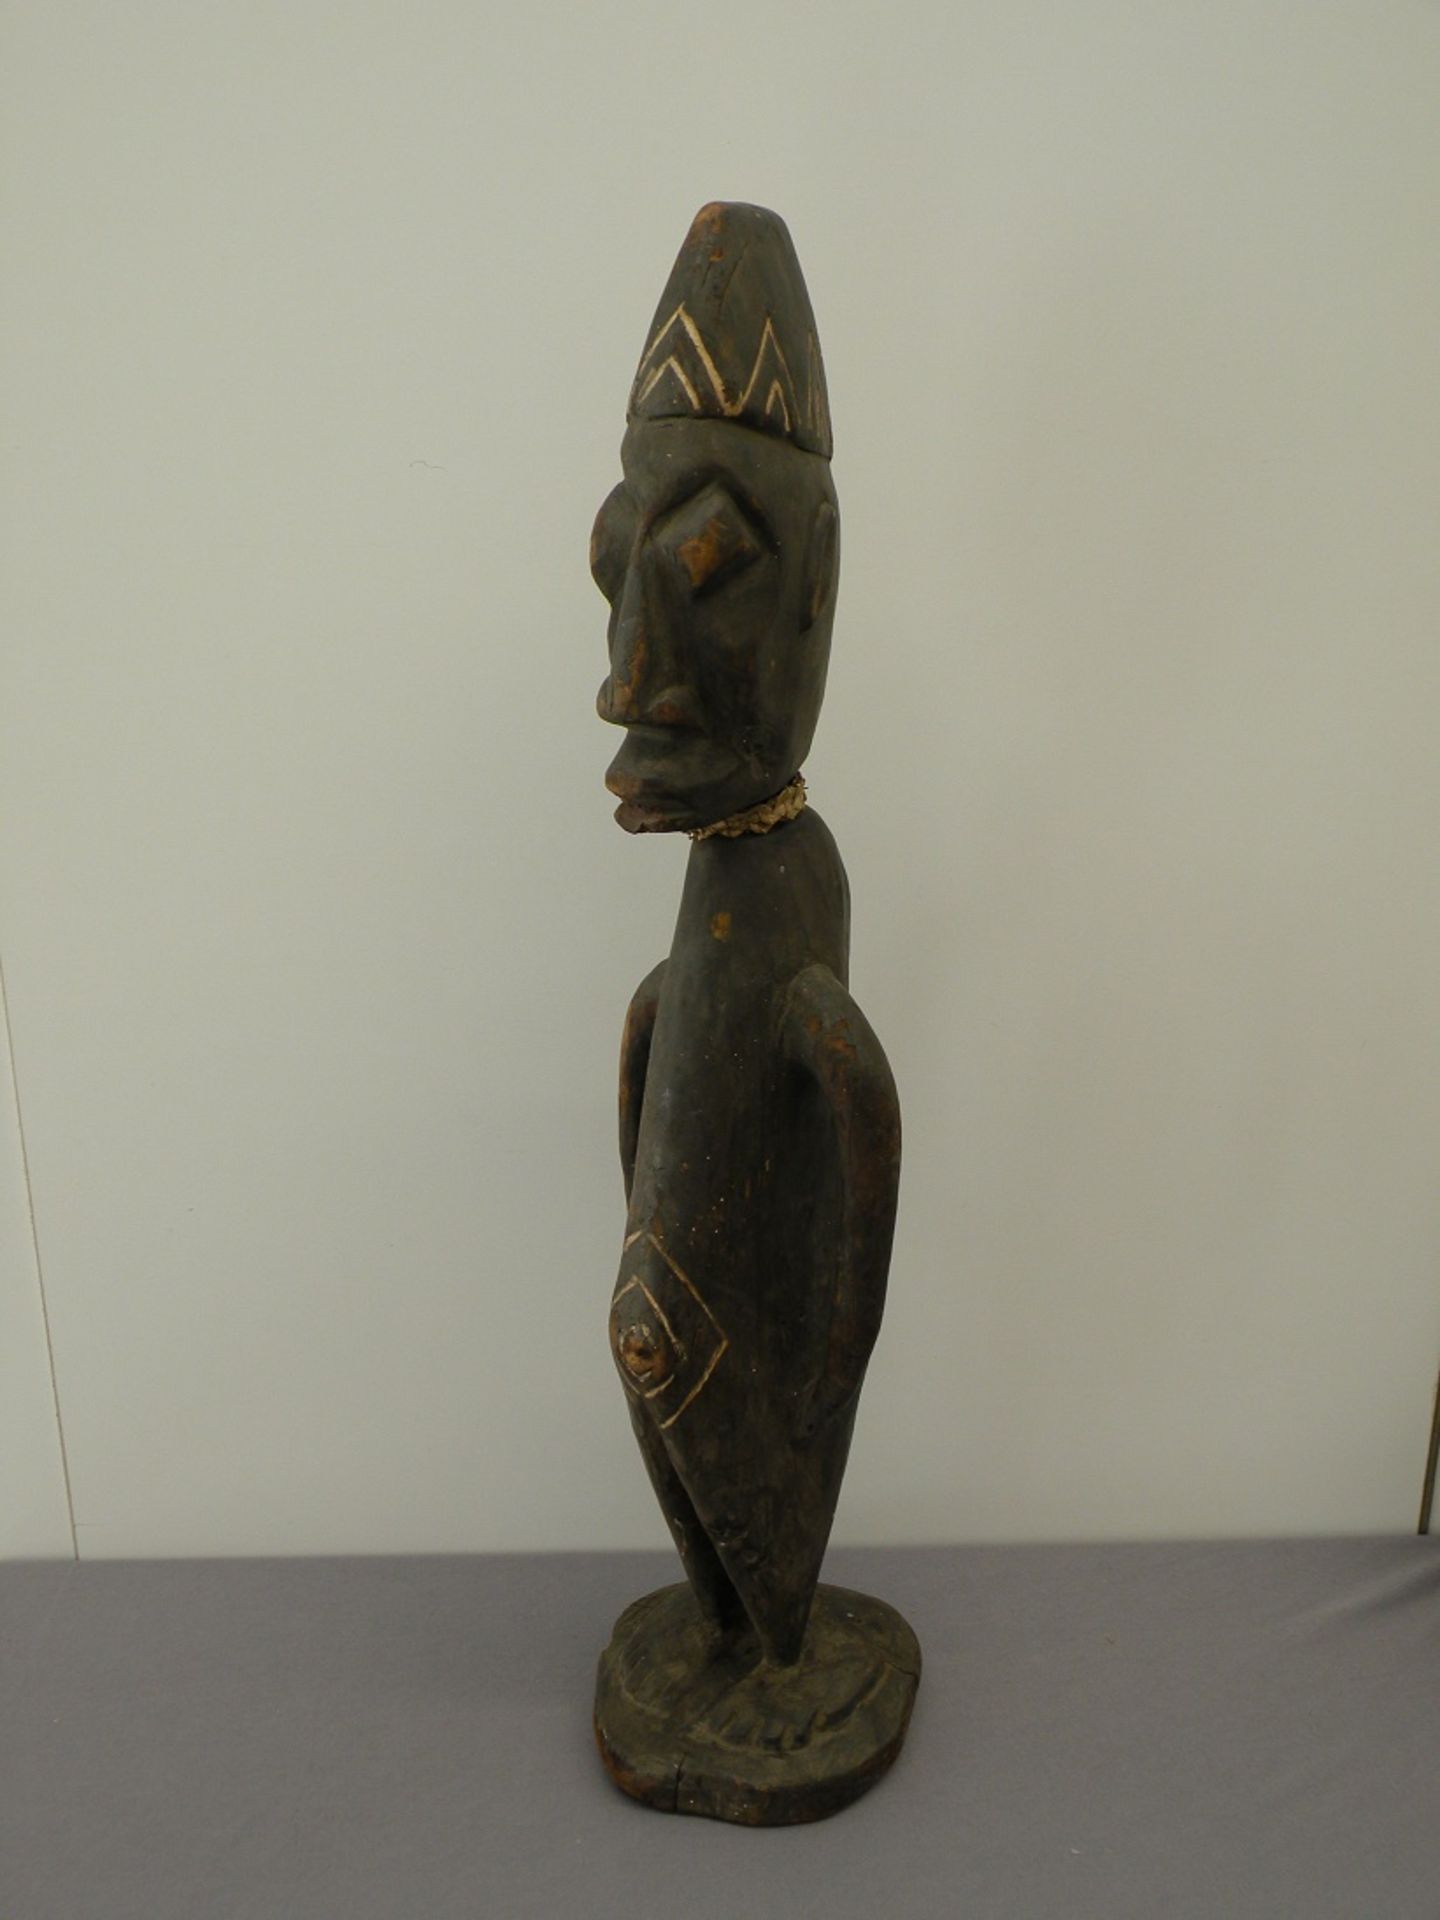 Holzfigur Afrika, alt, geschnitzt, 65 cm hoch